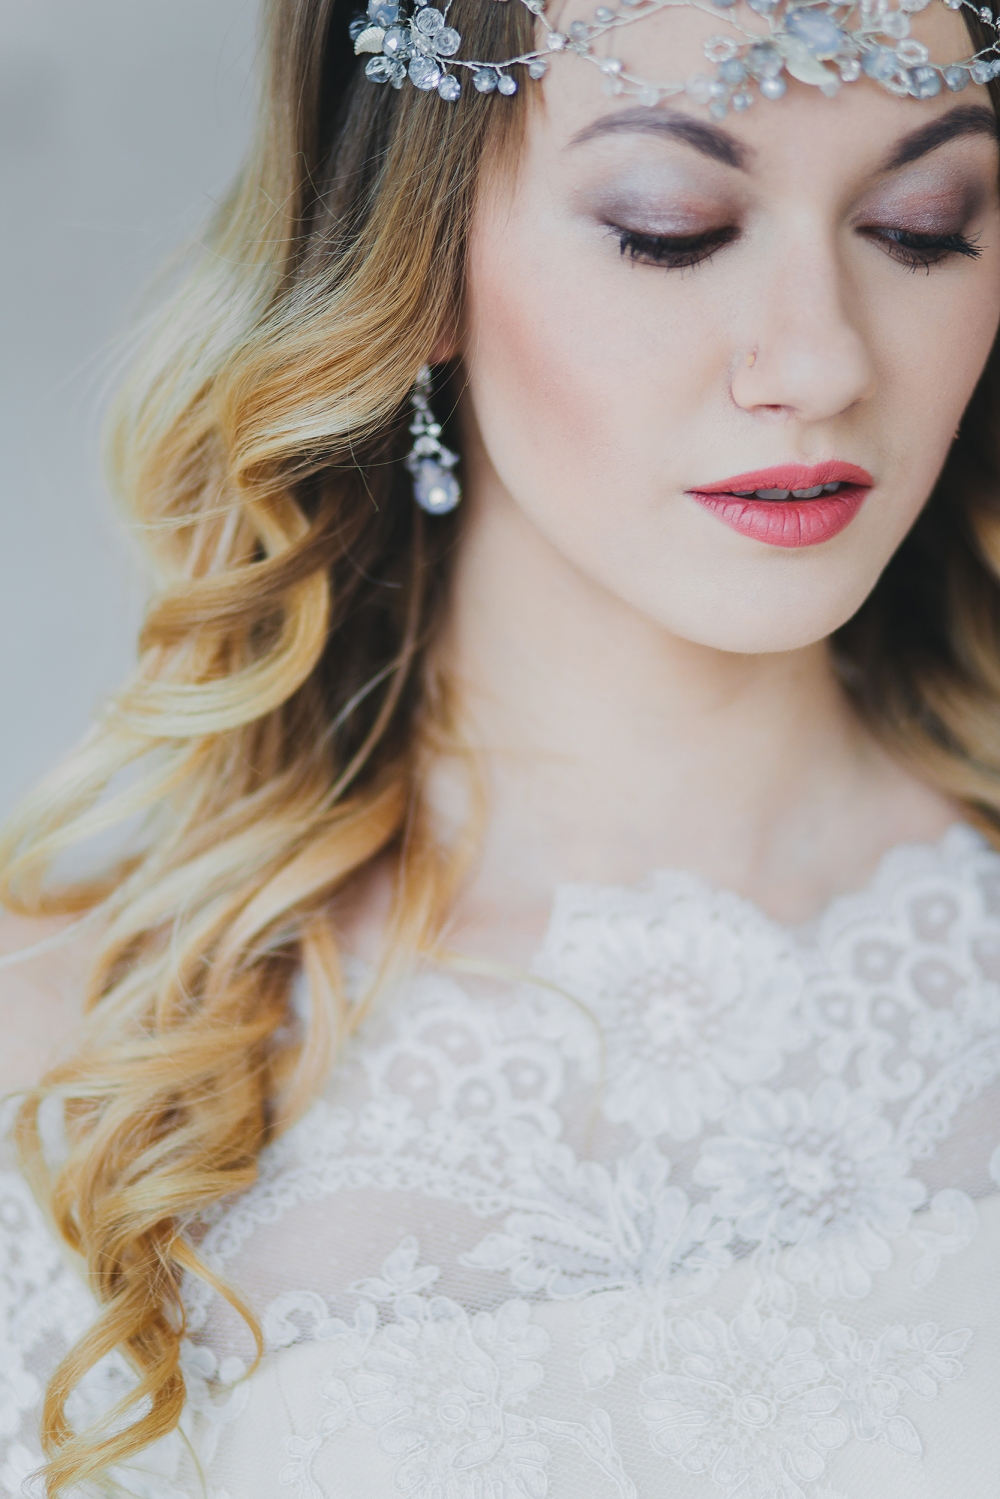 Легкий макияж с акцентом на губы — идеальный выбор для невест, которые хотят сделать образ воздушным